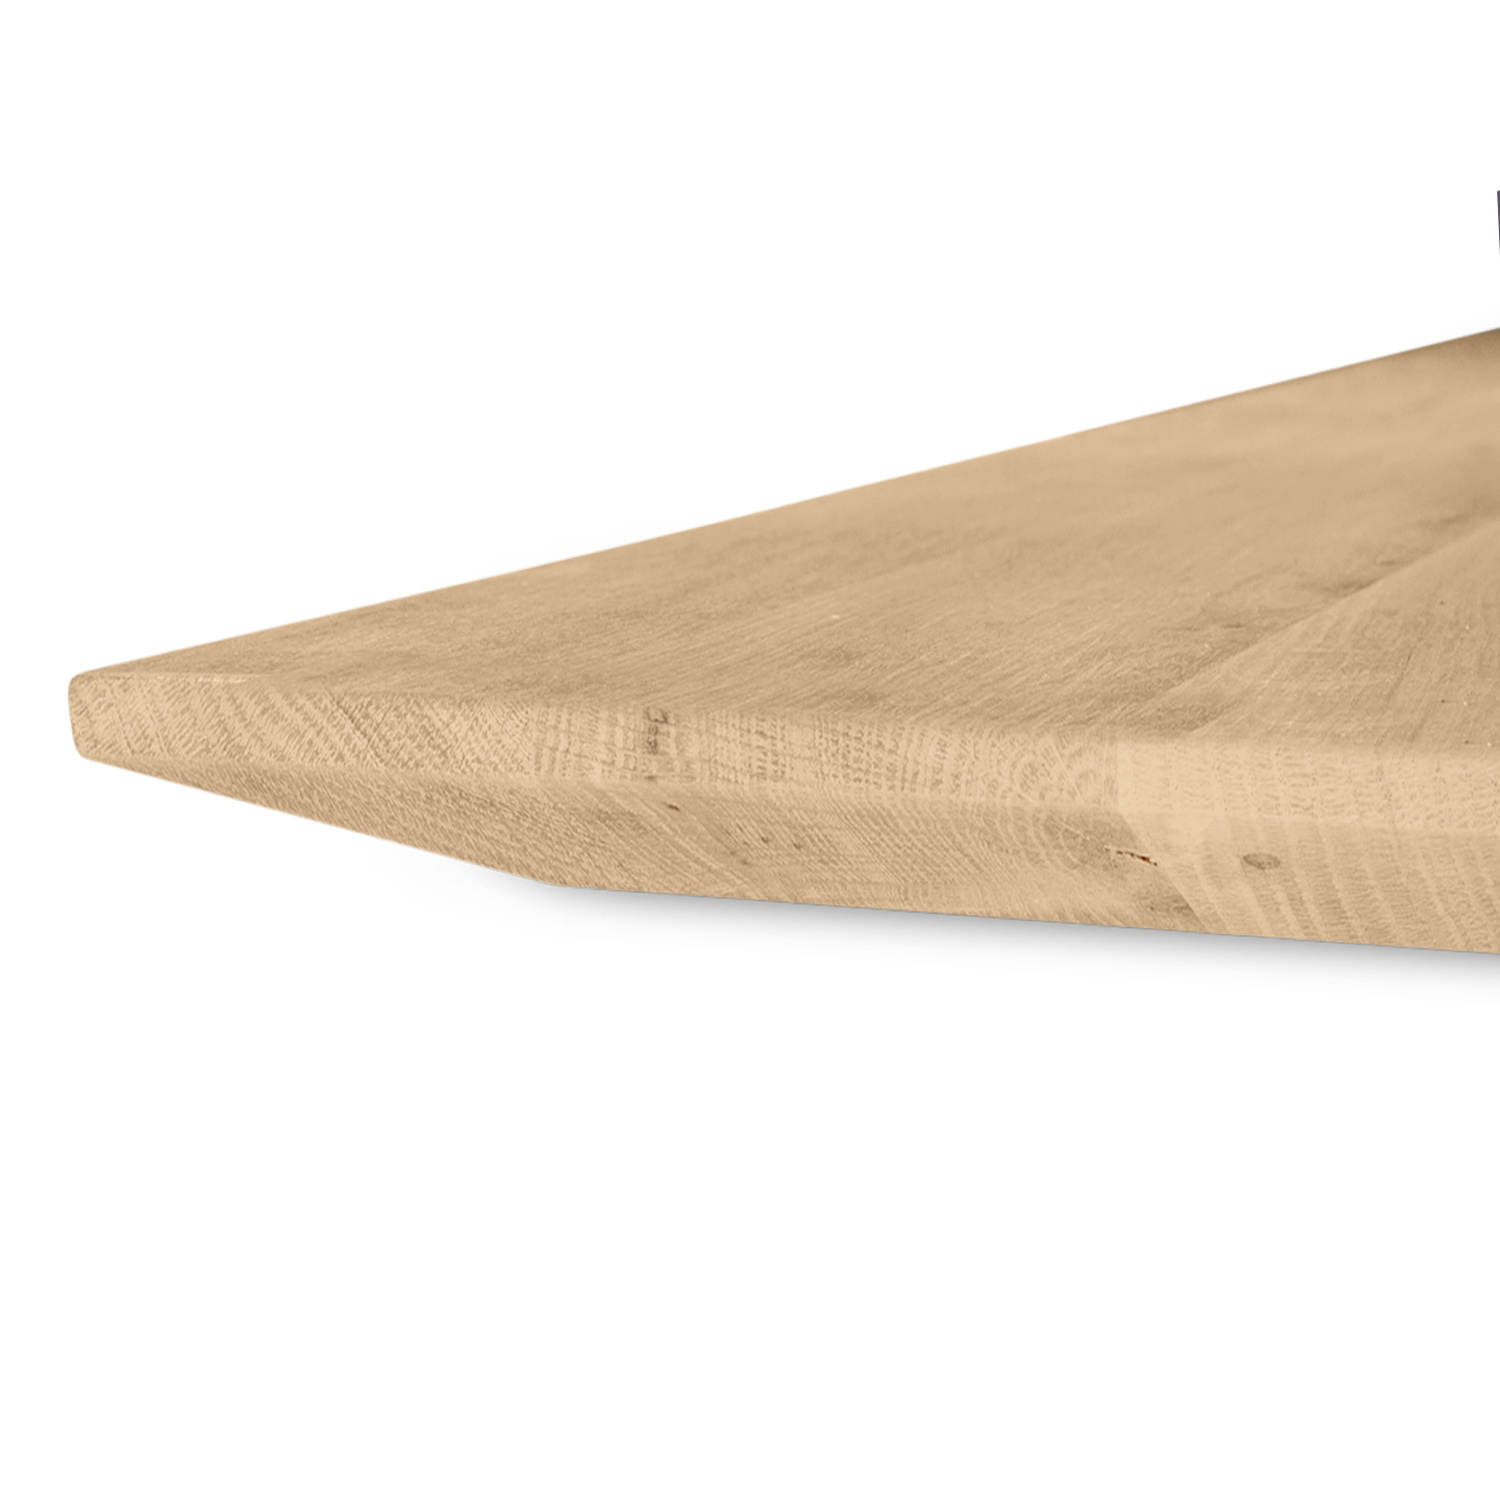  Tischplatte Wildeiche - Schweizer Kante - 4 cm dick (1-Schicht) - XXL Lamellen (14-20 cm breit) - Asteiche (rustikal) - verleimt & künstlich getrocknet (HF 8-12%) - verschiedene Größen